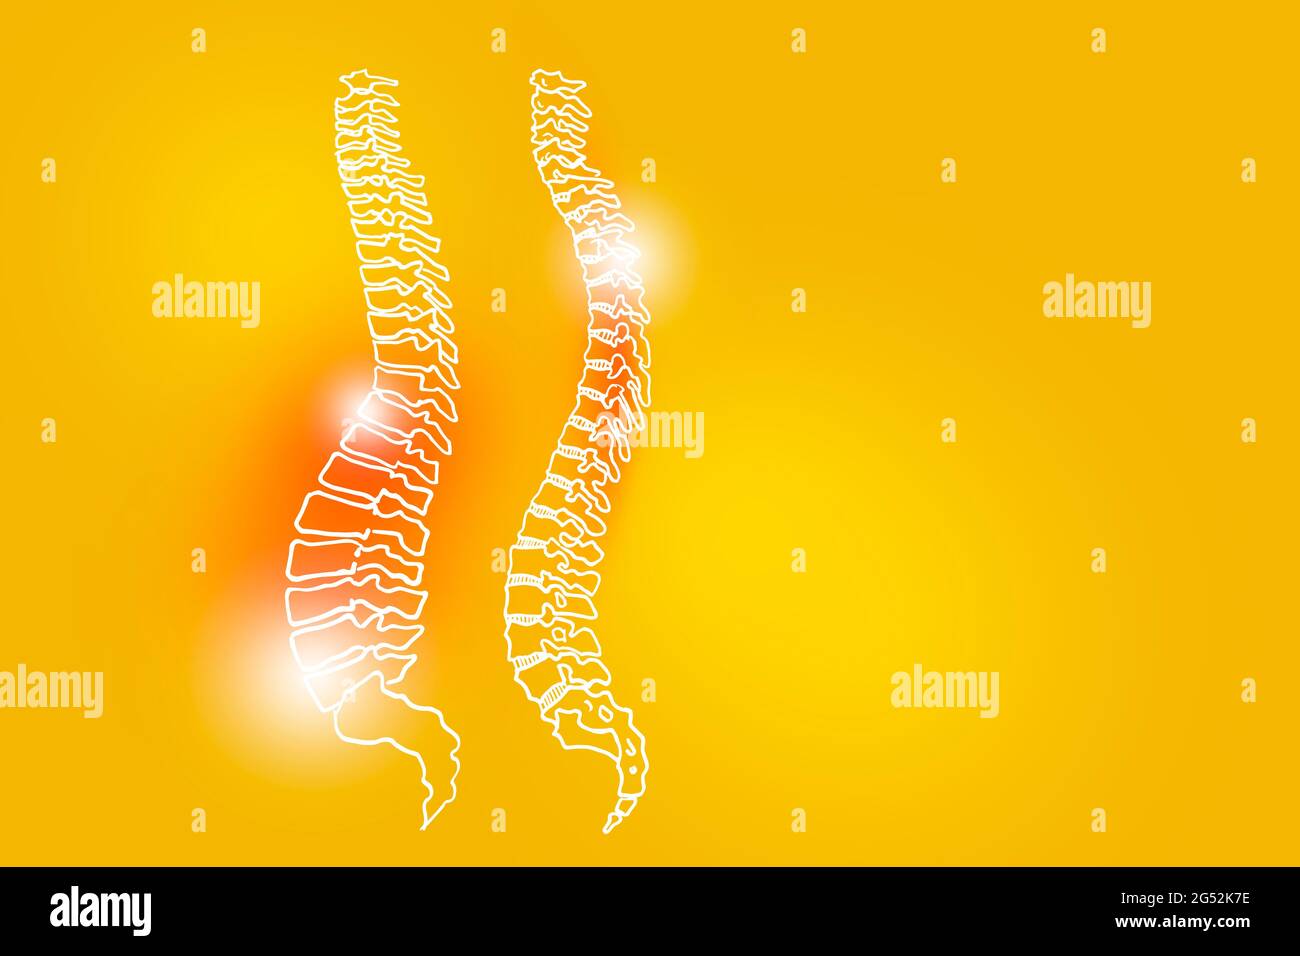 Illustrazione Handrawn della colonna vertebrale umana su sfondo giallo. Set medico-scientifico con i principali organi umani con spazio di copia vuoto per testo o infografica. Foto Stock